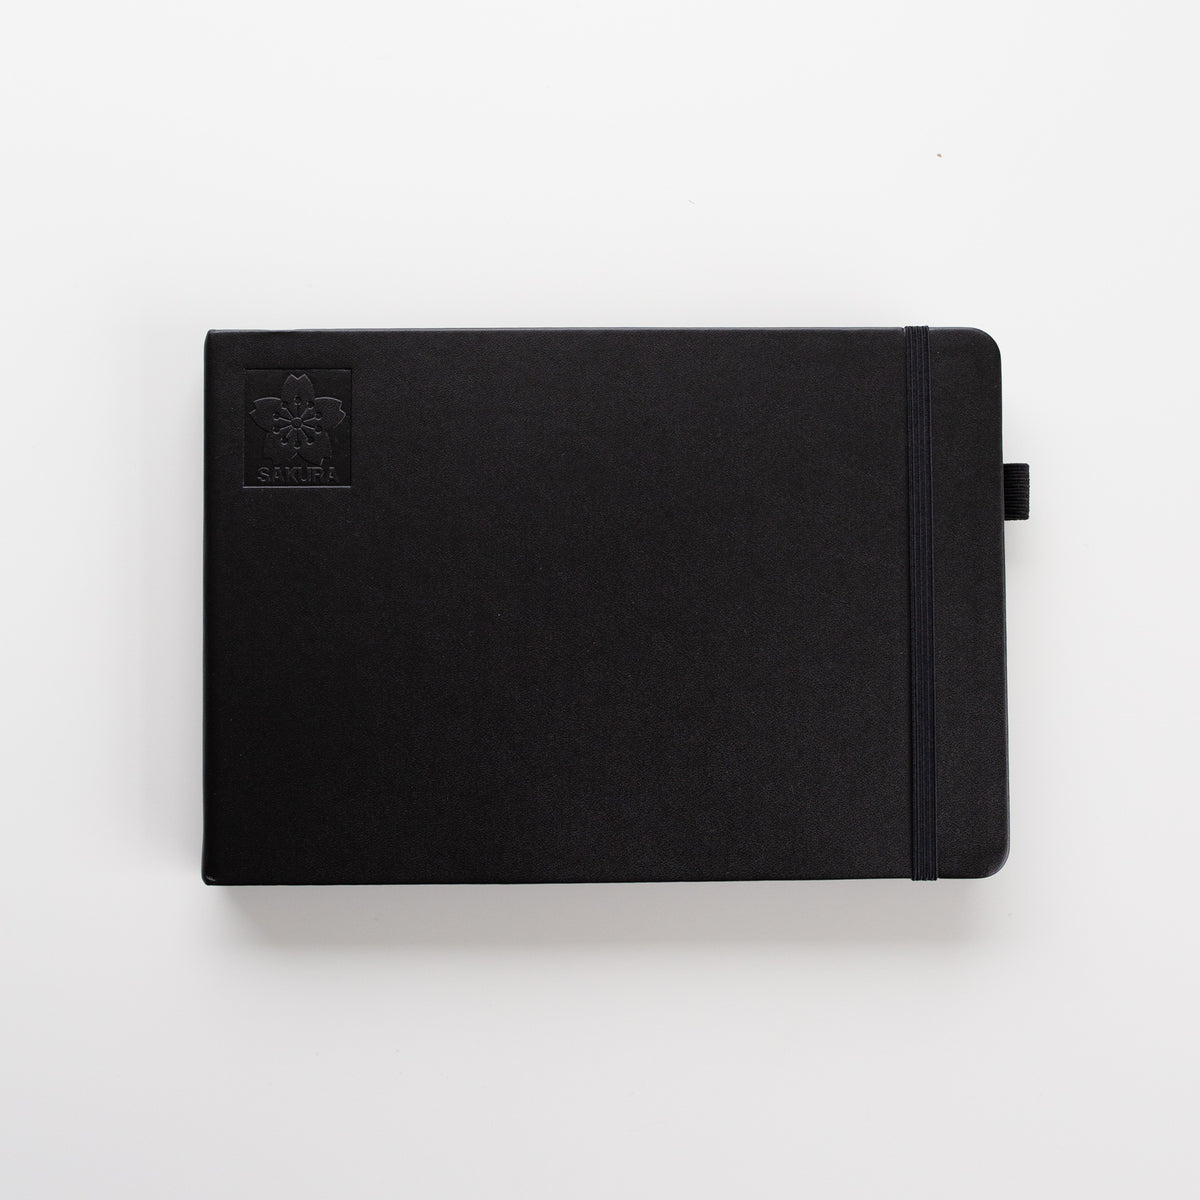 Sakura Black sketchbook 14,8x21cm